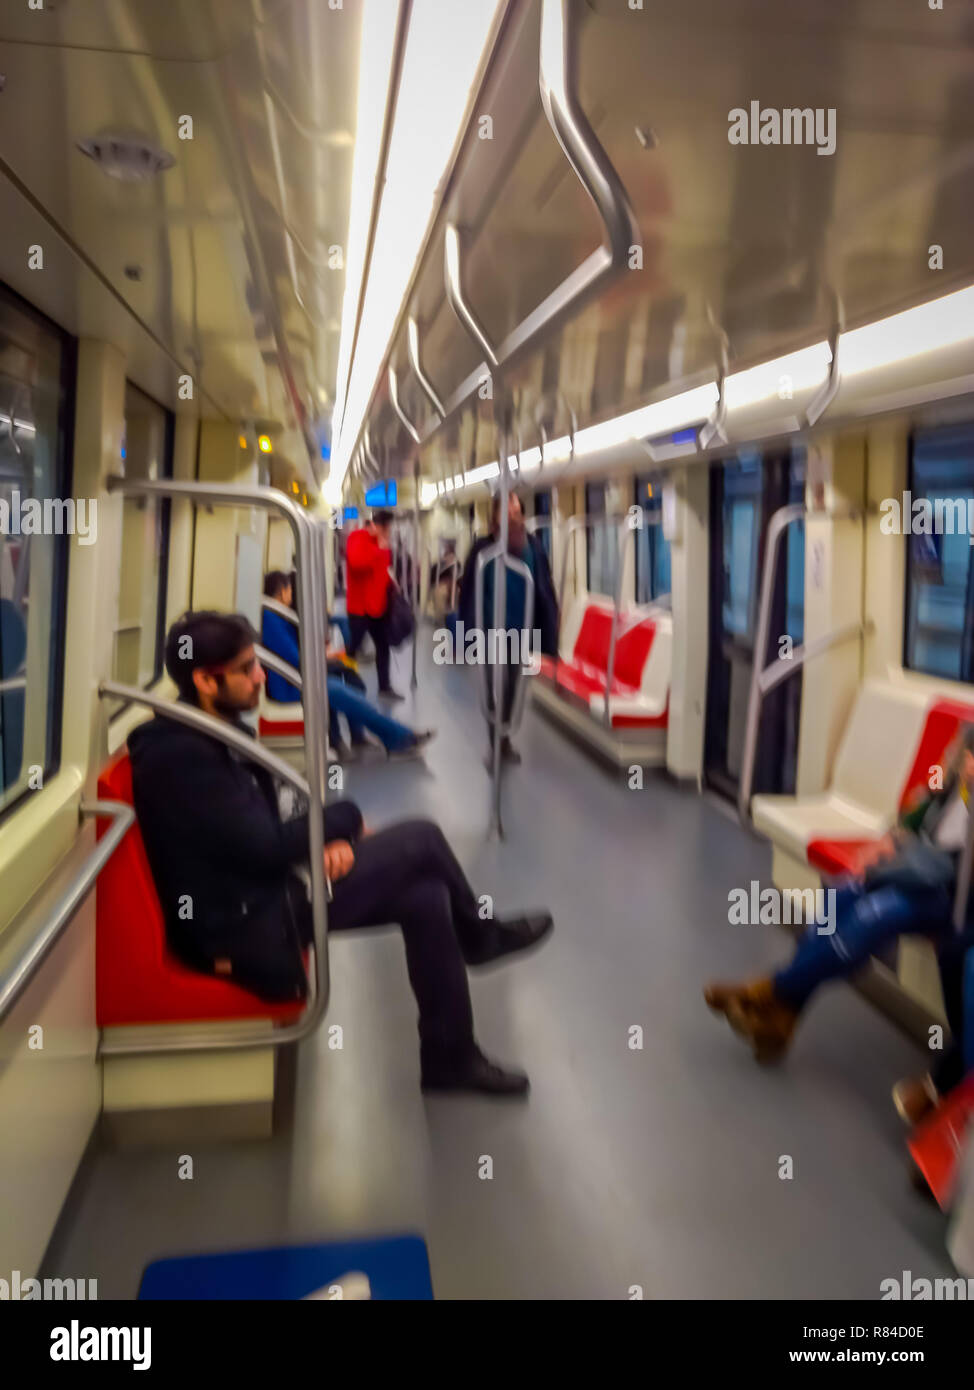 SANTIAGO, CHILI - 09 octobre, 2018 : Piscine vue de personnes non identifiées à l'intérieur du train électrique sur gare centrale de Santiago, Chili Banque D'Images